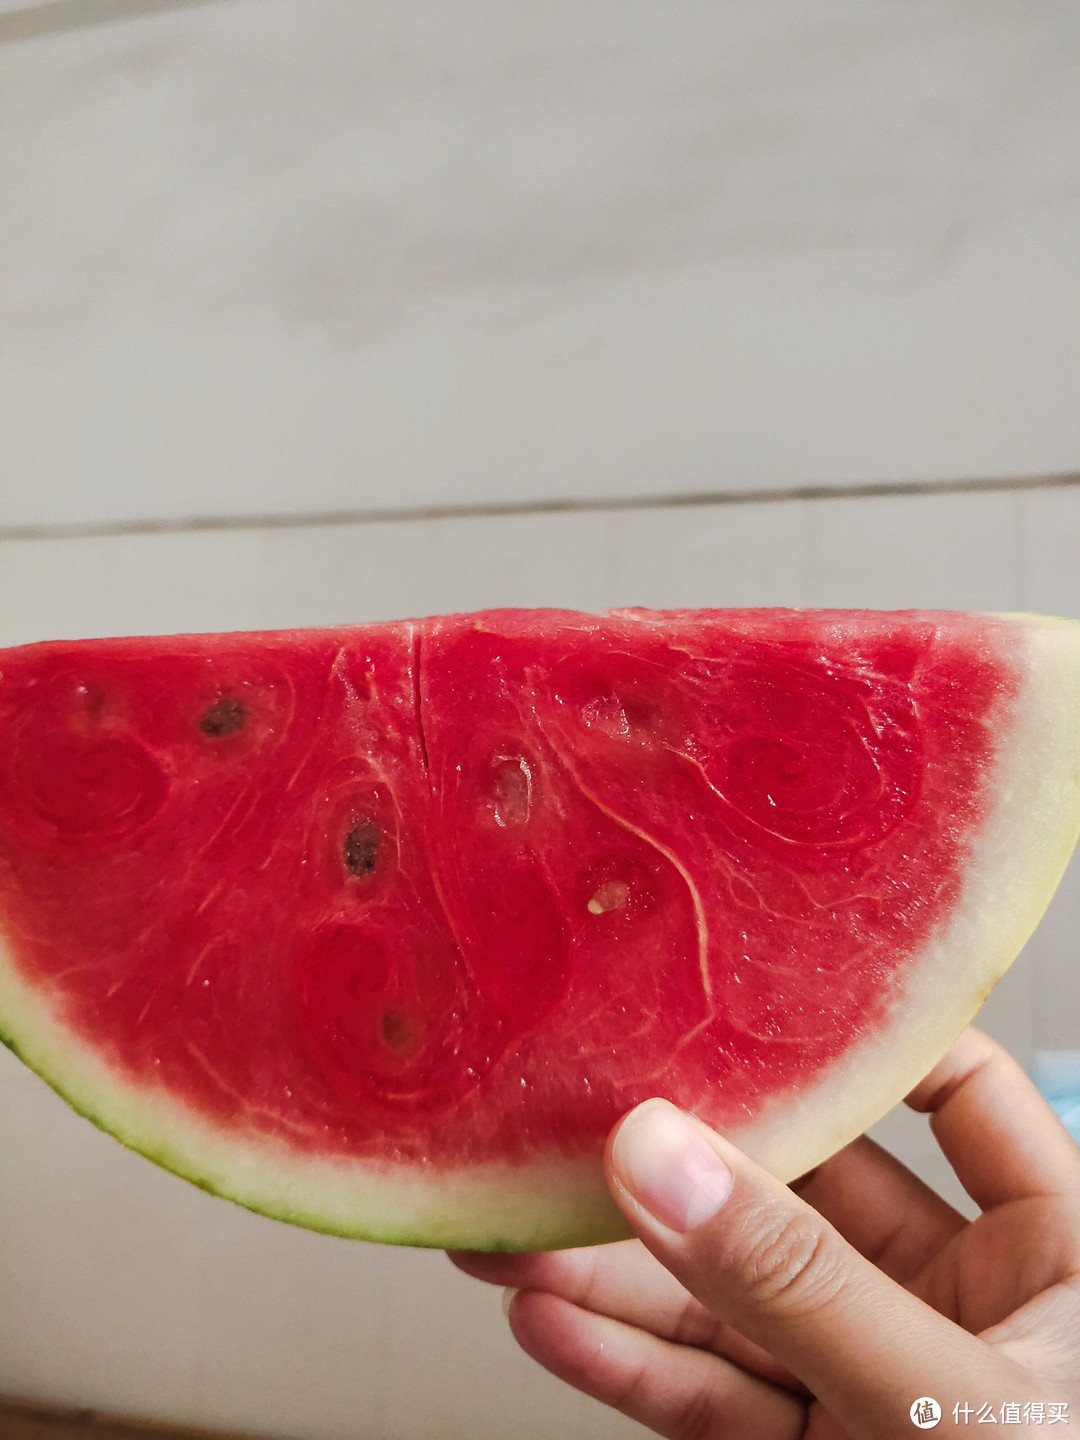 又到了吃瓜的季节，西瓜是夏日最爱的水果！